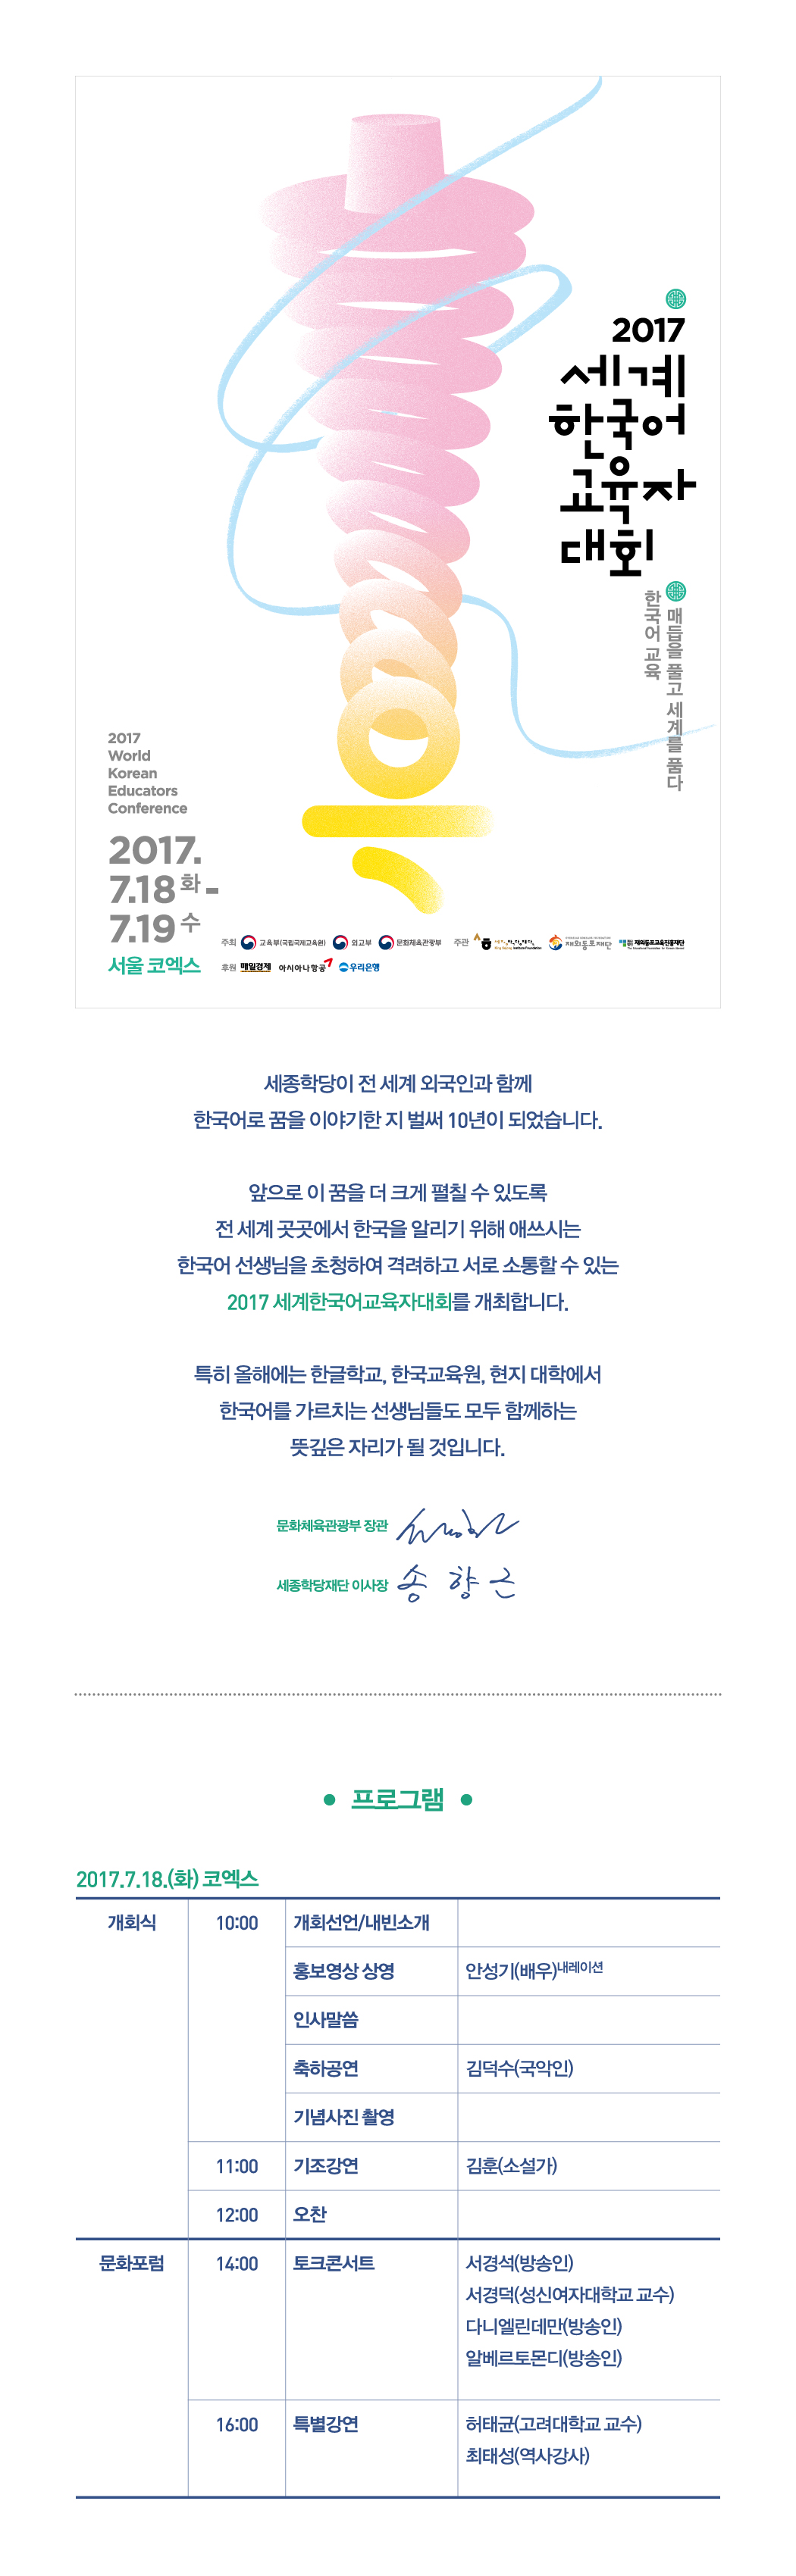 포스터 2019 세계한국어교육자대회 2017 World Korean Educators Conference 2017년 7월 18일(화)-7월 19일(수) 서울 코엑스